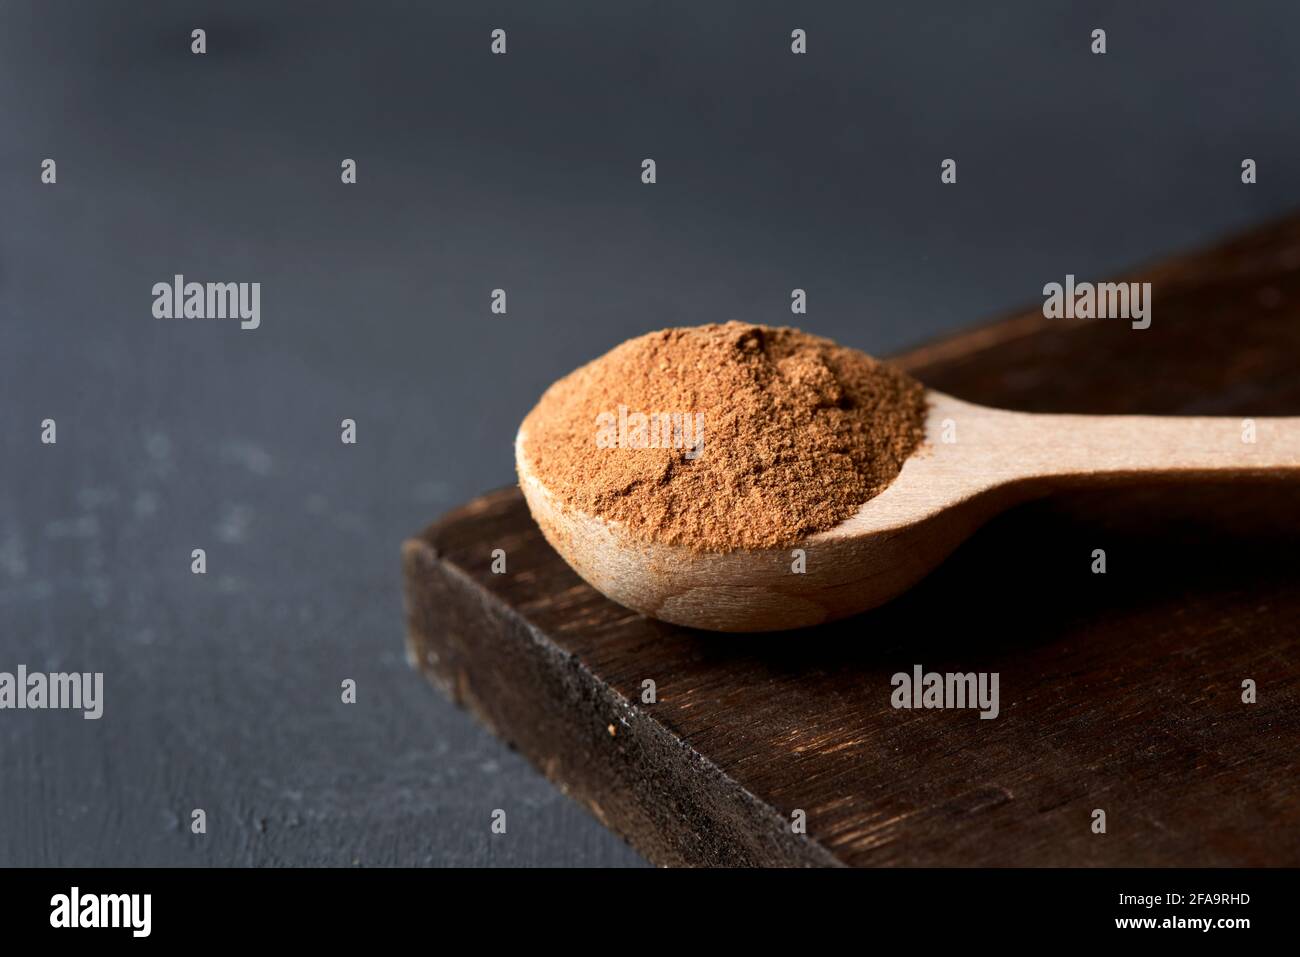 primo piano di un cucchiaio di legno pieno di polvere di camu-camu su un vassoio di legno scuro, posto su una superficie di colore grigio scuro Foto Stock